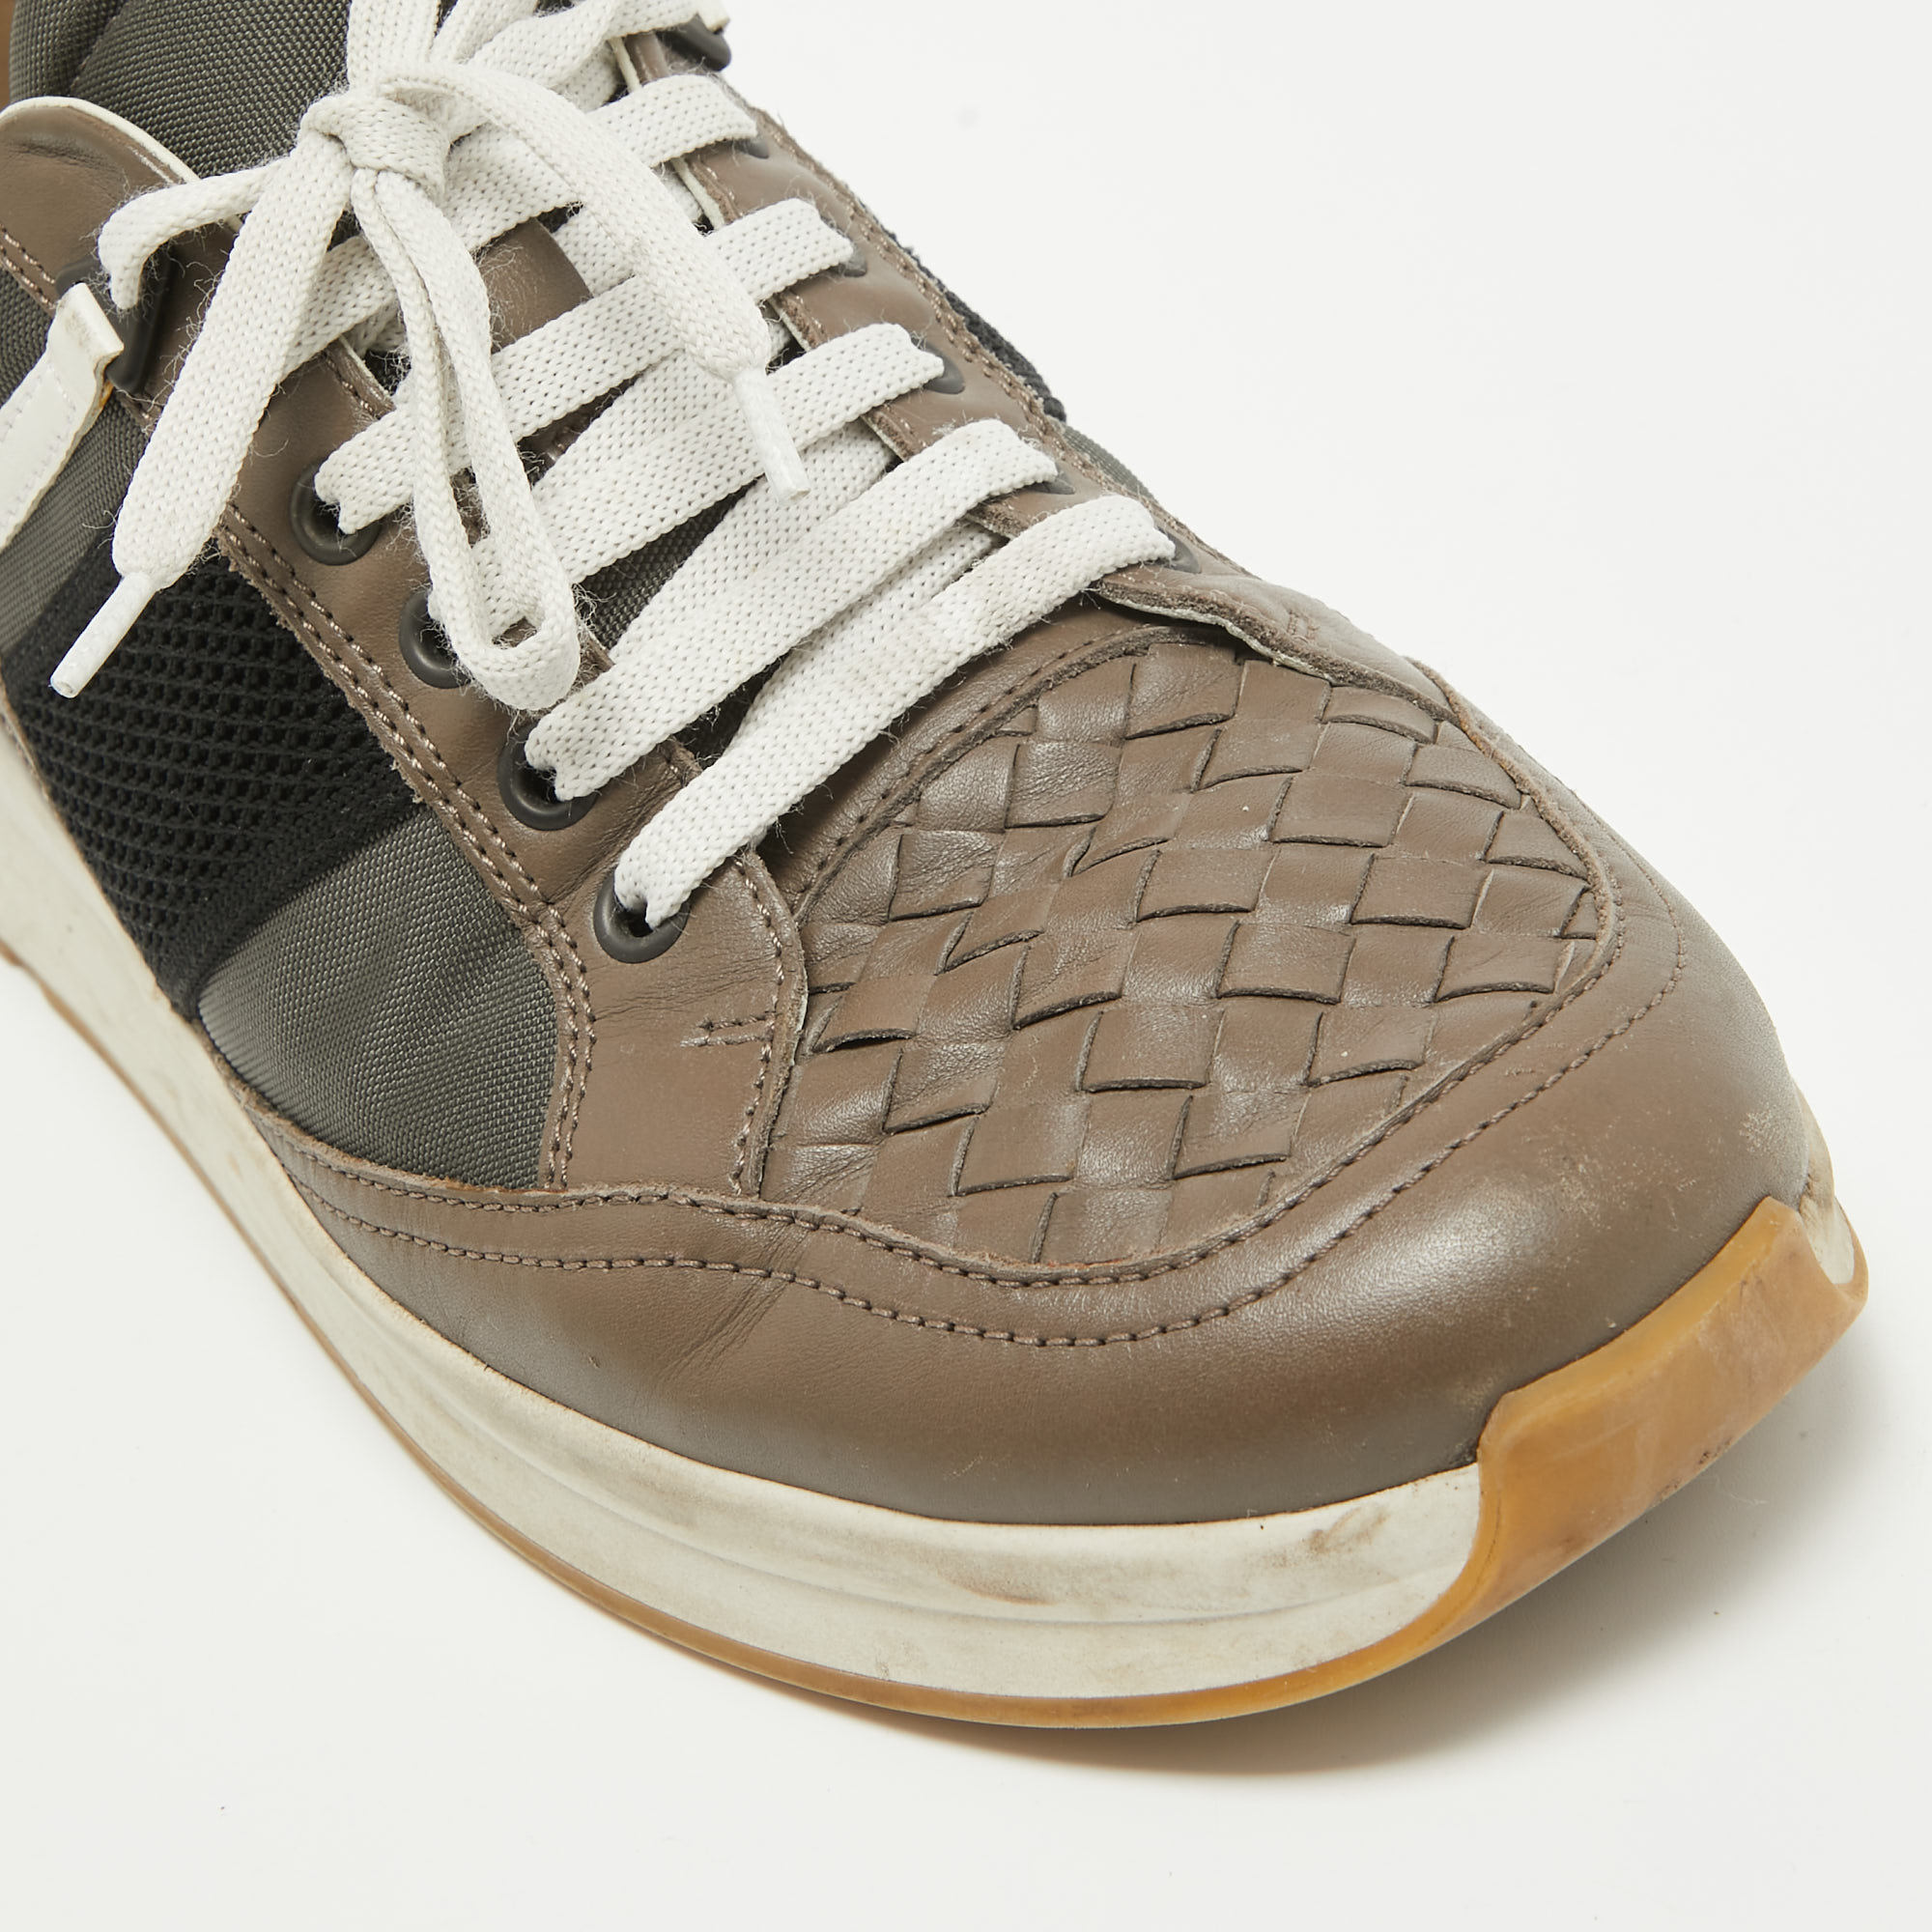 Bottega Veneta Multicolor Intrecciato Leather & Canvas Lace Up Sneakers Size 42